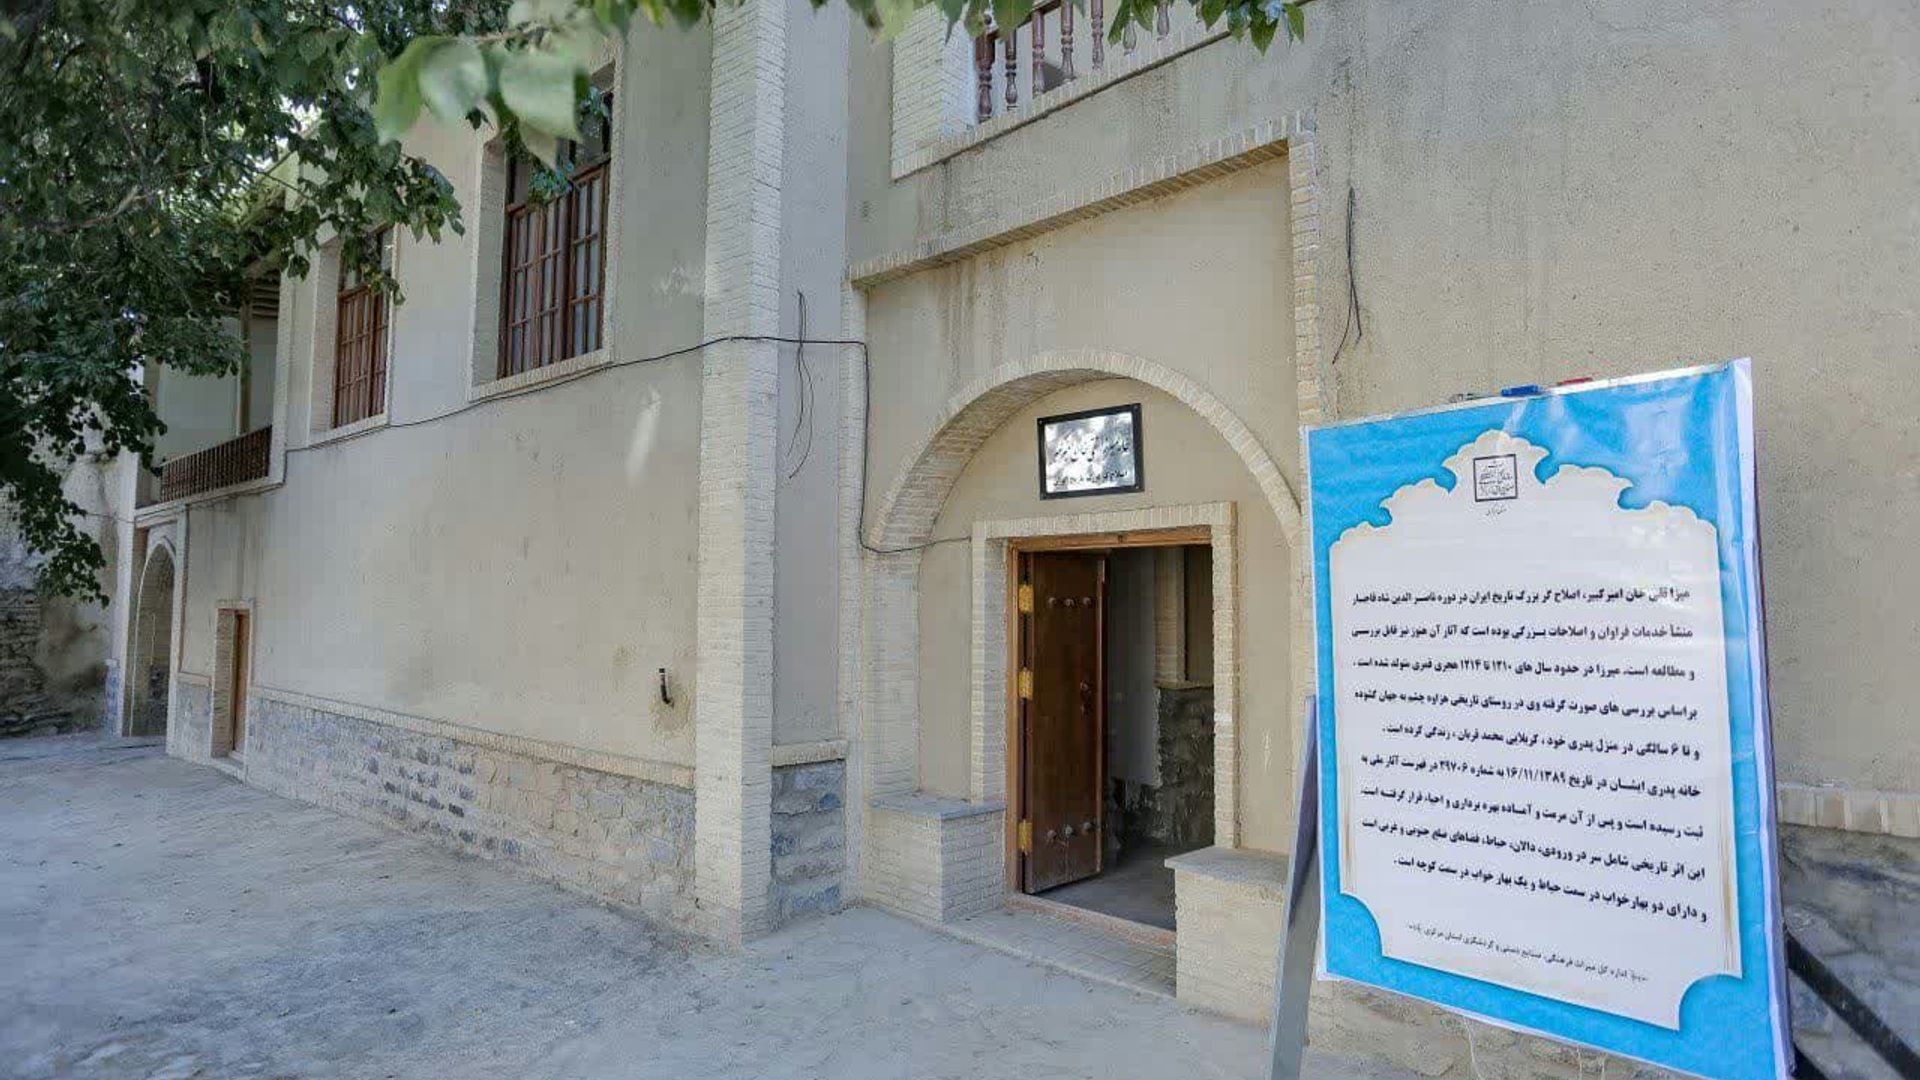 فرماندار شهرستان اراک به عنوان رییس هیأت امنای خانه امیرکبیر تعیین شد.